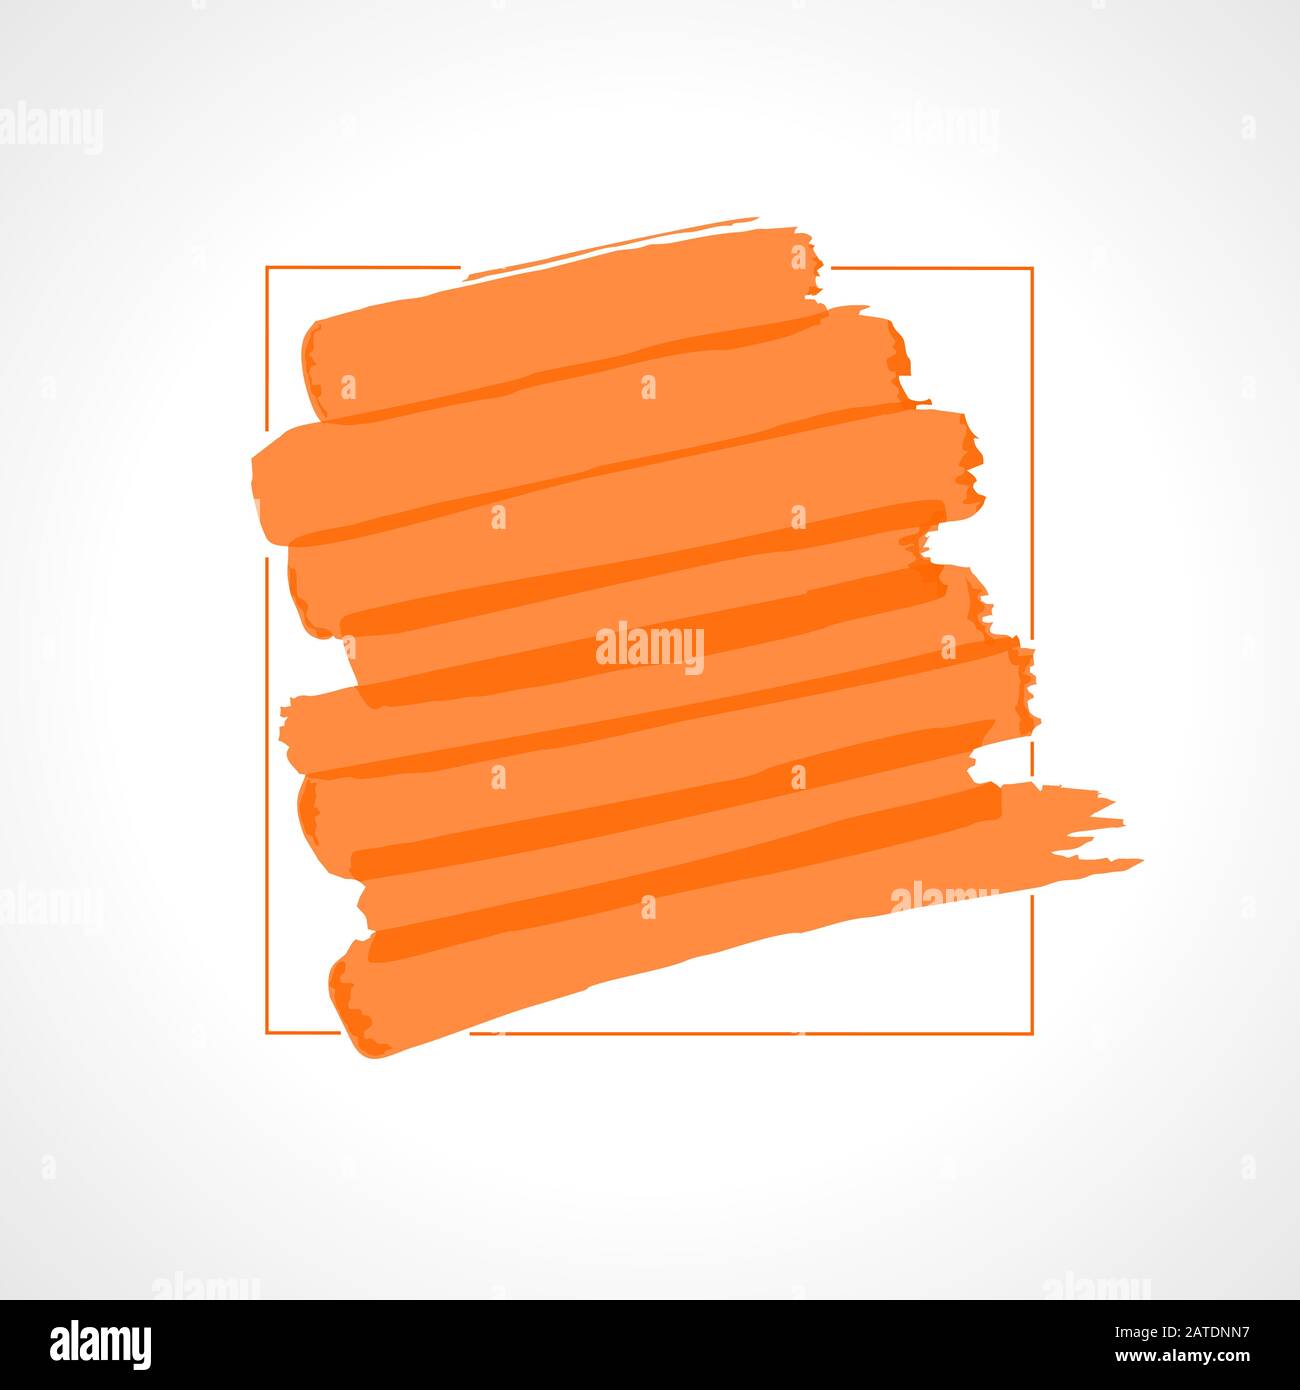 Strisce di evidenziatori arancioni disegnate a mano. Template di sfondo dei tratti di marcatore. Ottimizzato per le modifiche dei colori con un solo clic. Colori trasparenti EPS10 vettoriale illu Illustrazione Vettoriale